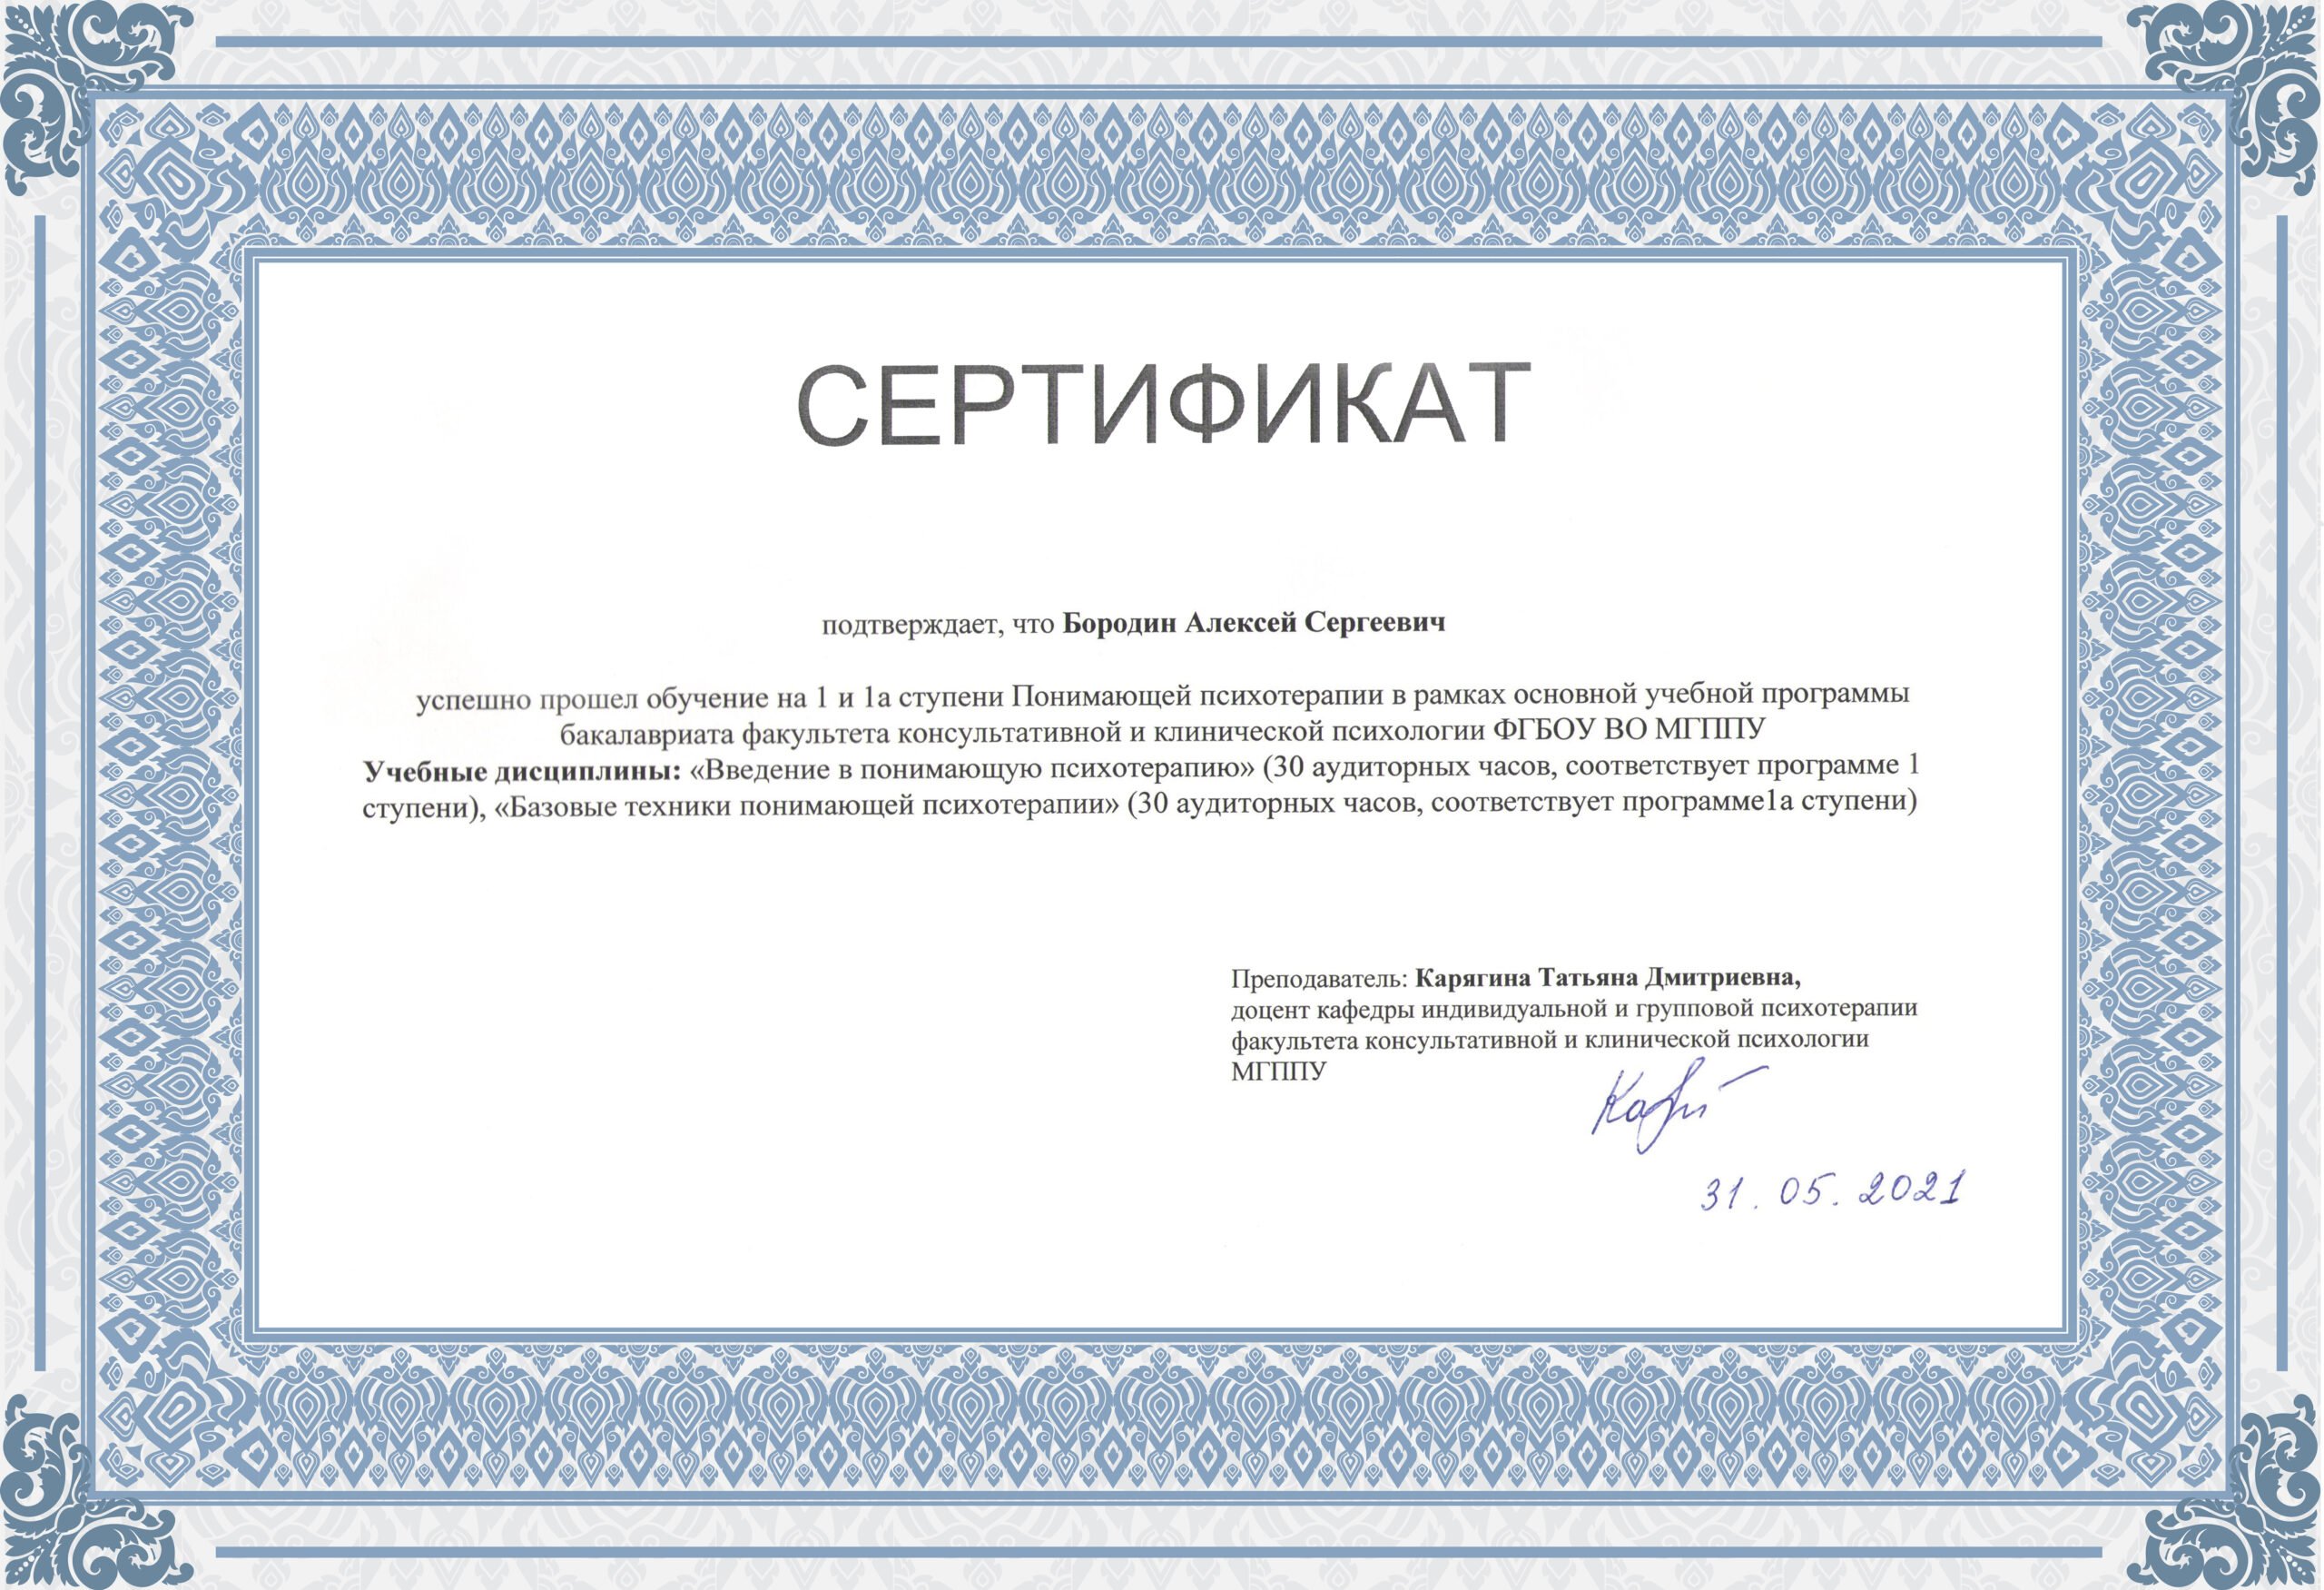 Сертификат об обучении Понимающей Психотерапии